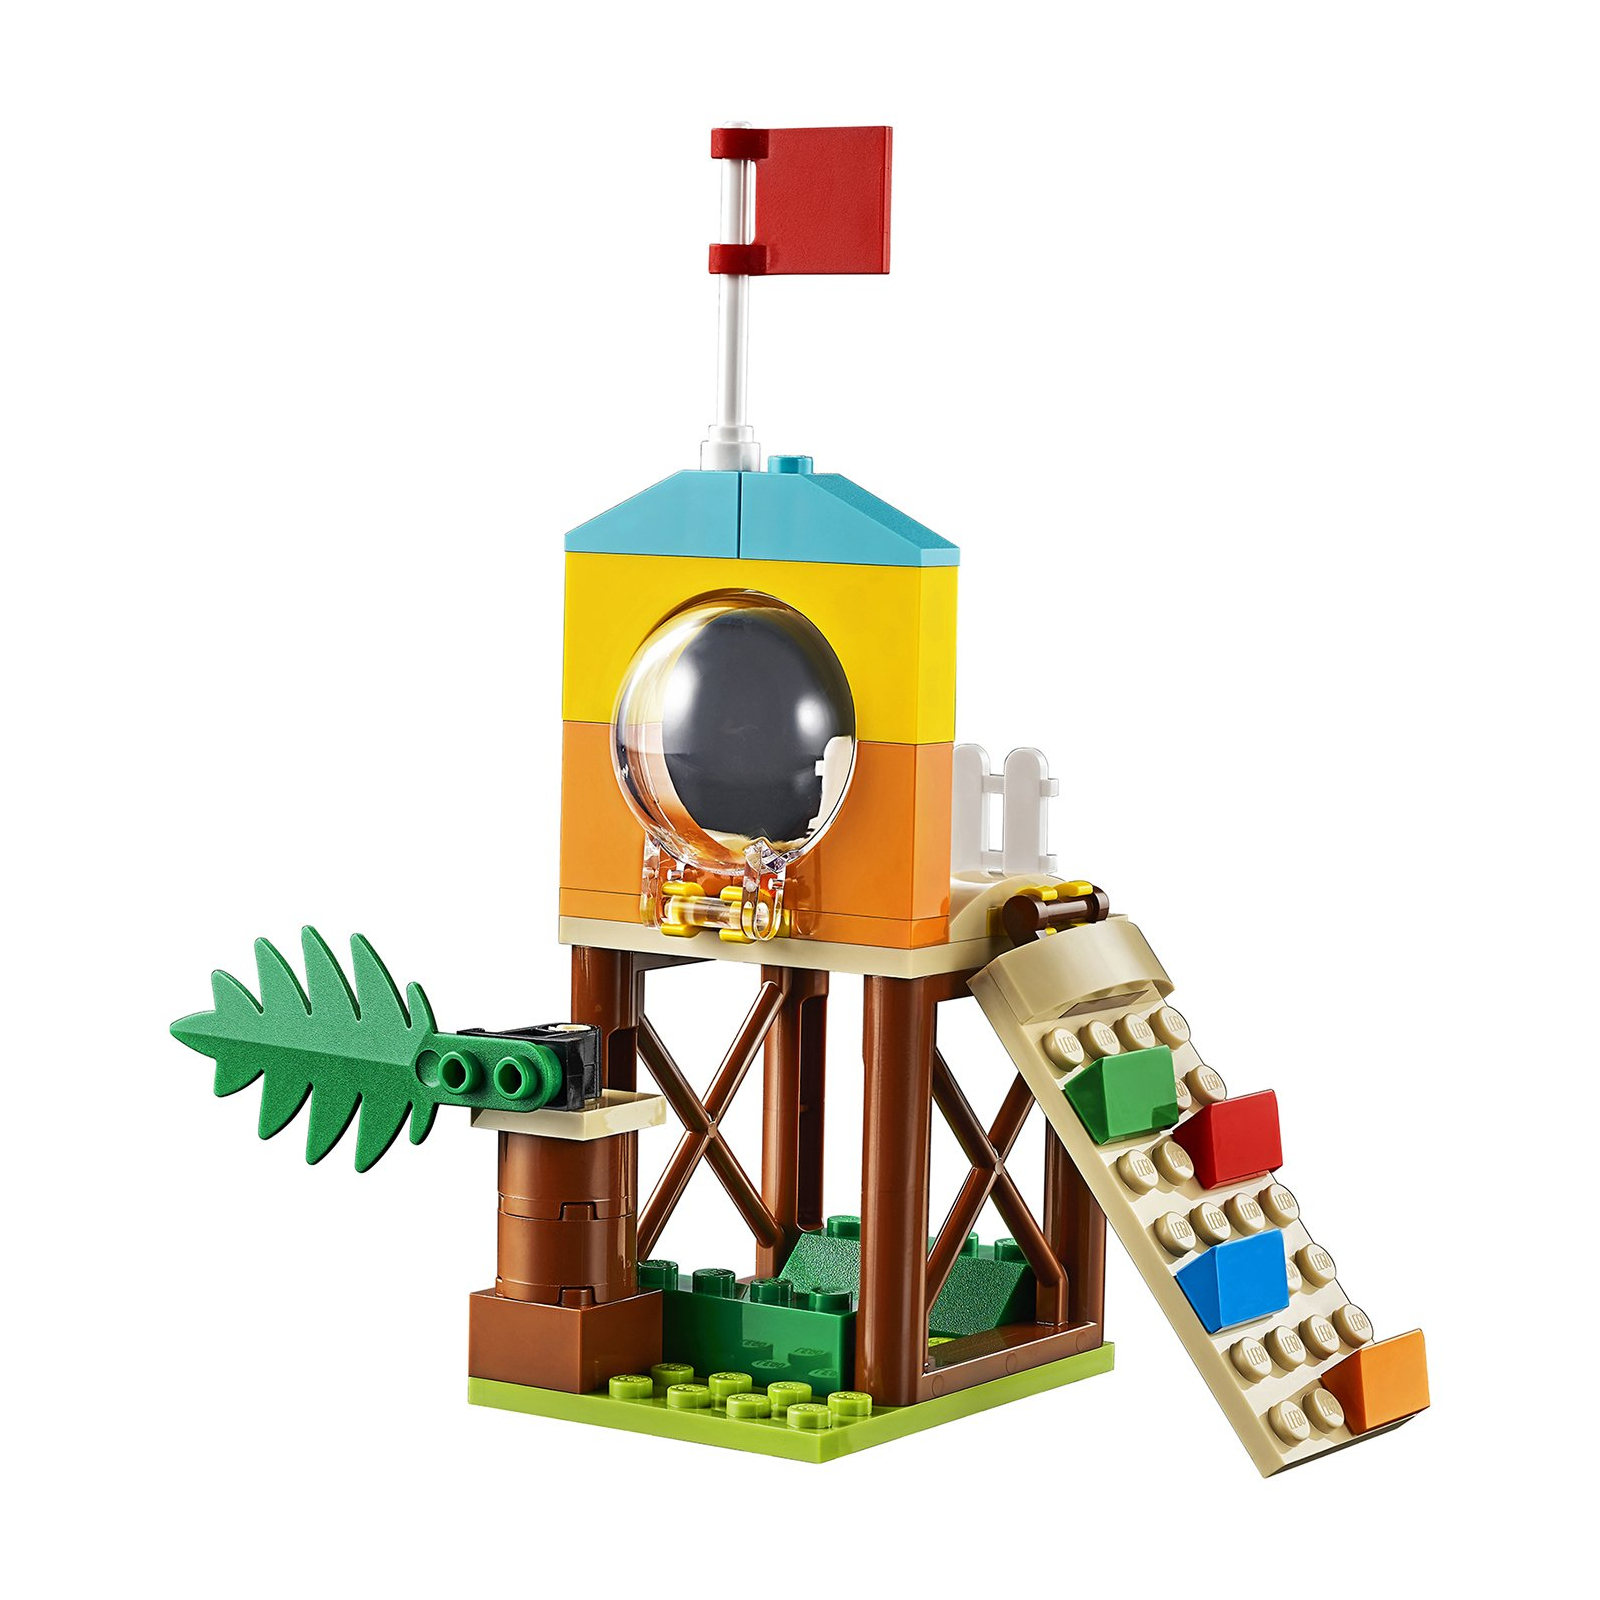 Конструктор LEGO Toy Story 4 Приключения Базза и Бо Пип на детской площадке 1 (10768) изображение 6